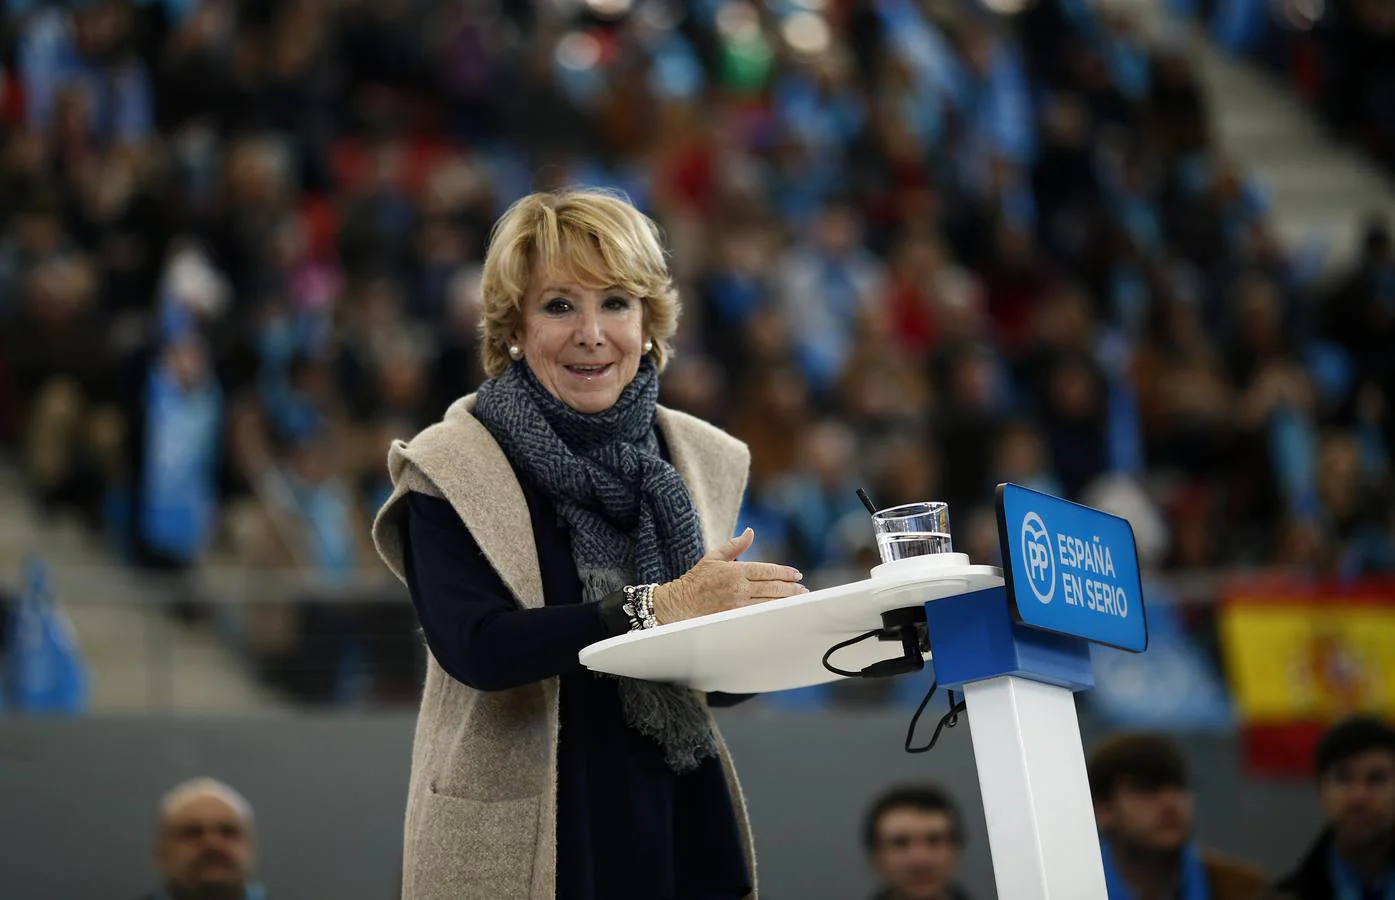 Esperanza Aguirre, líder de PP madrileño, retoma la línea de mujeres más buscadas y se posiciona en el sexto puesto. Este ha sido, uno de sus peores años electorales tras perder frente a Carmena